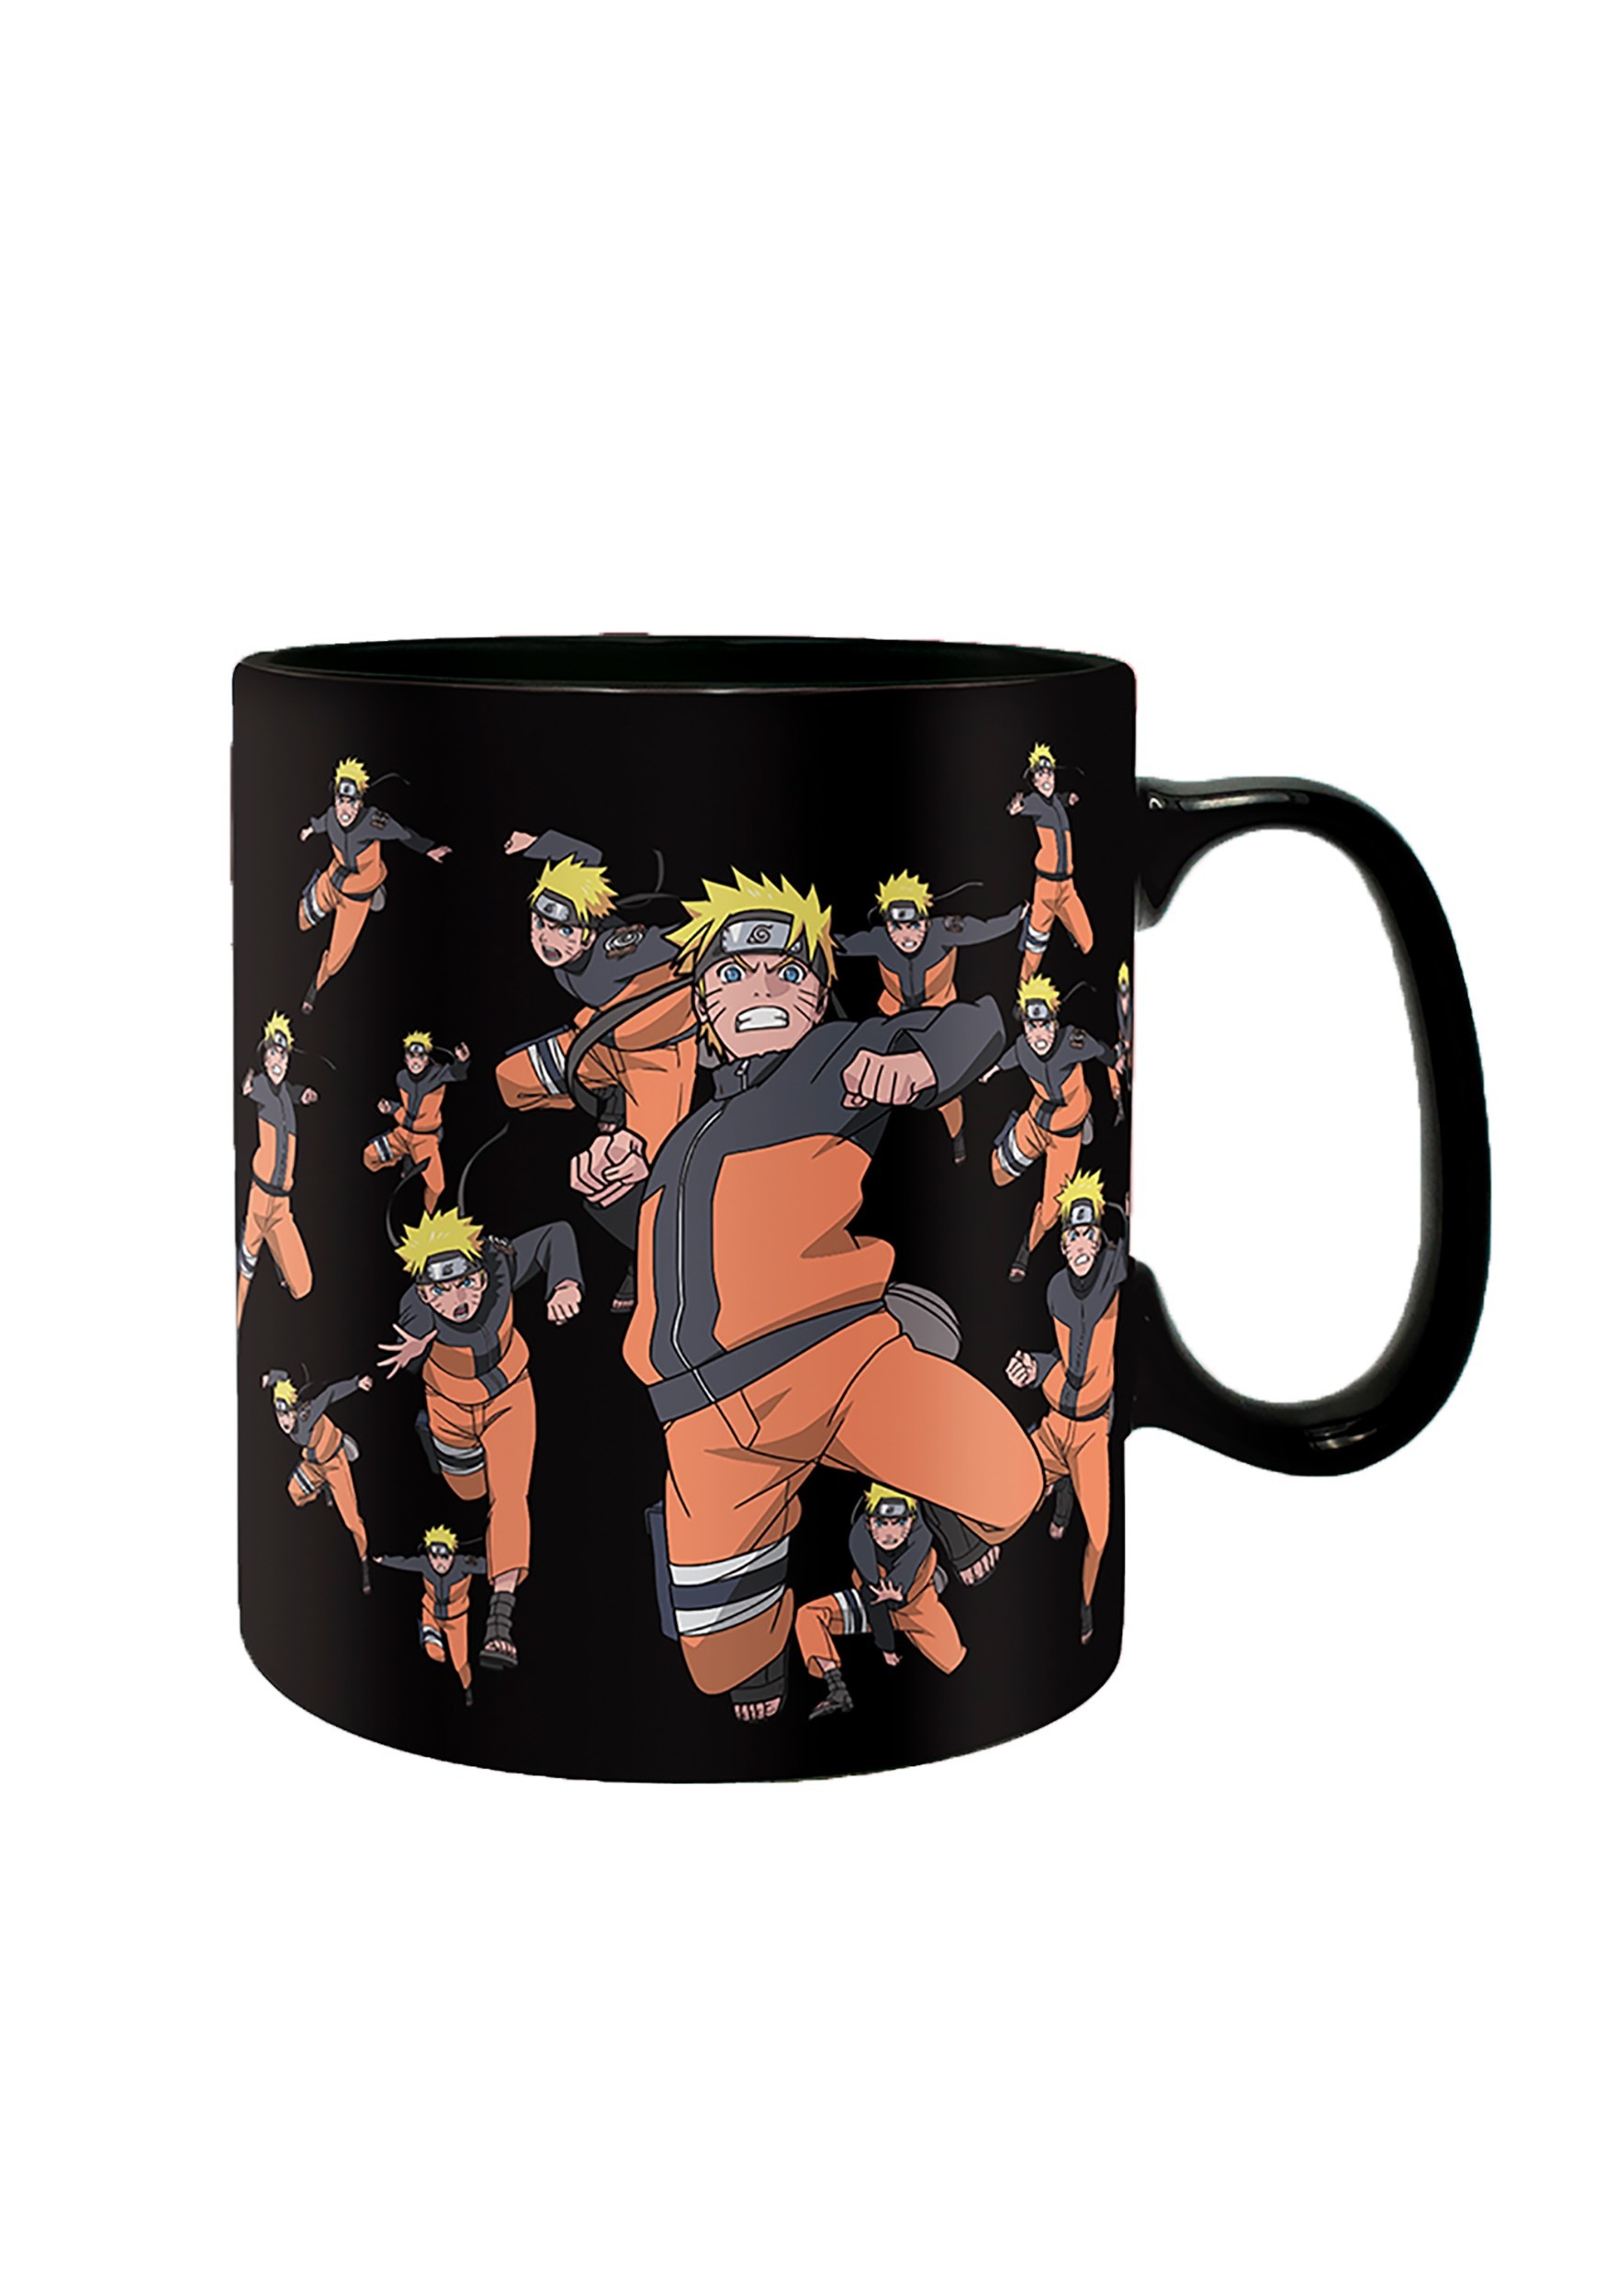 Naruto Shippuden - Naruto Clone Jutsu Magic Coffee Mug & Coaster